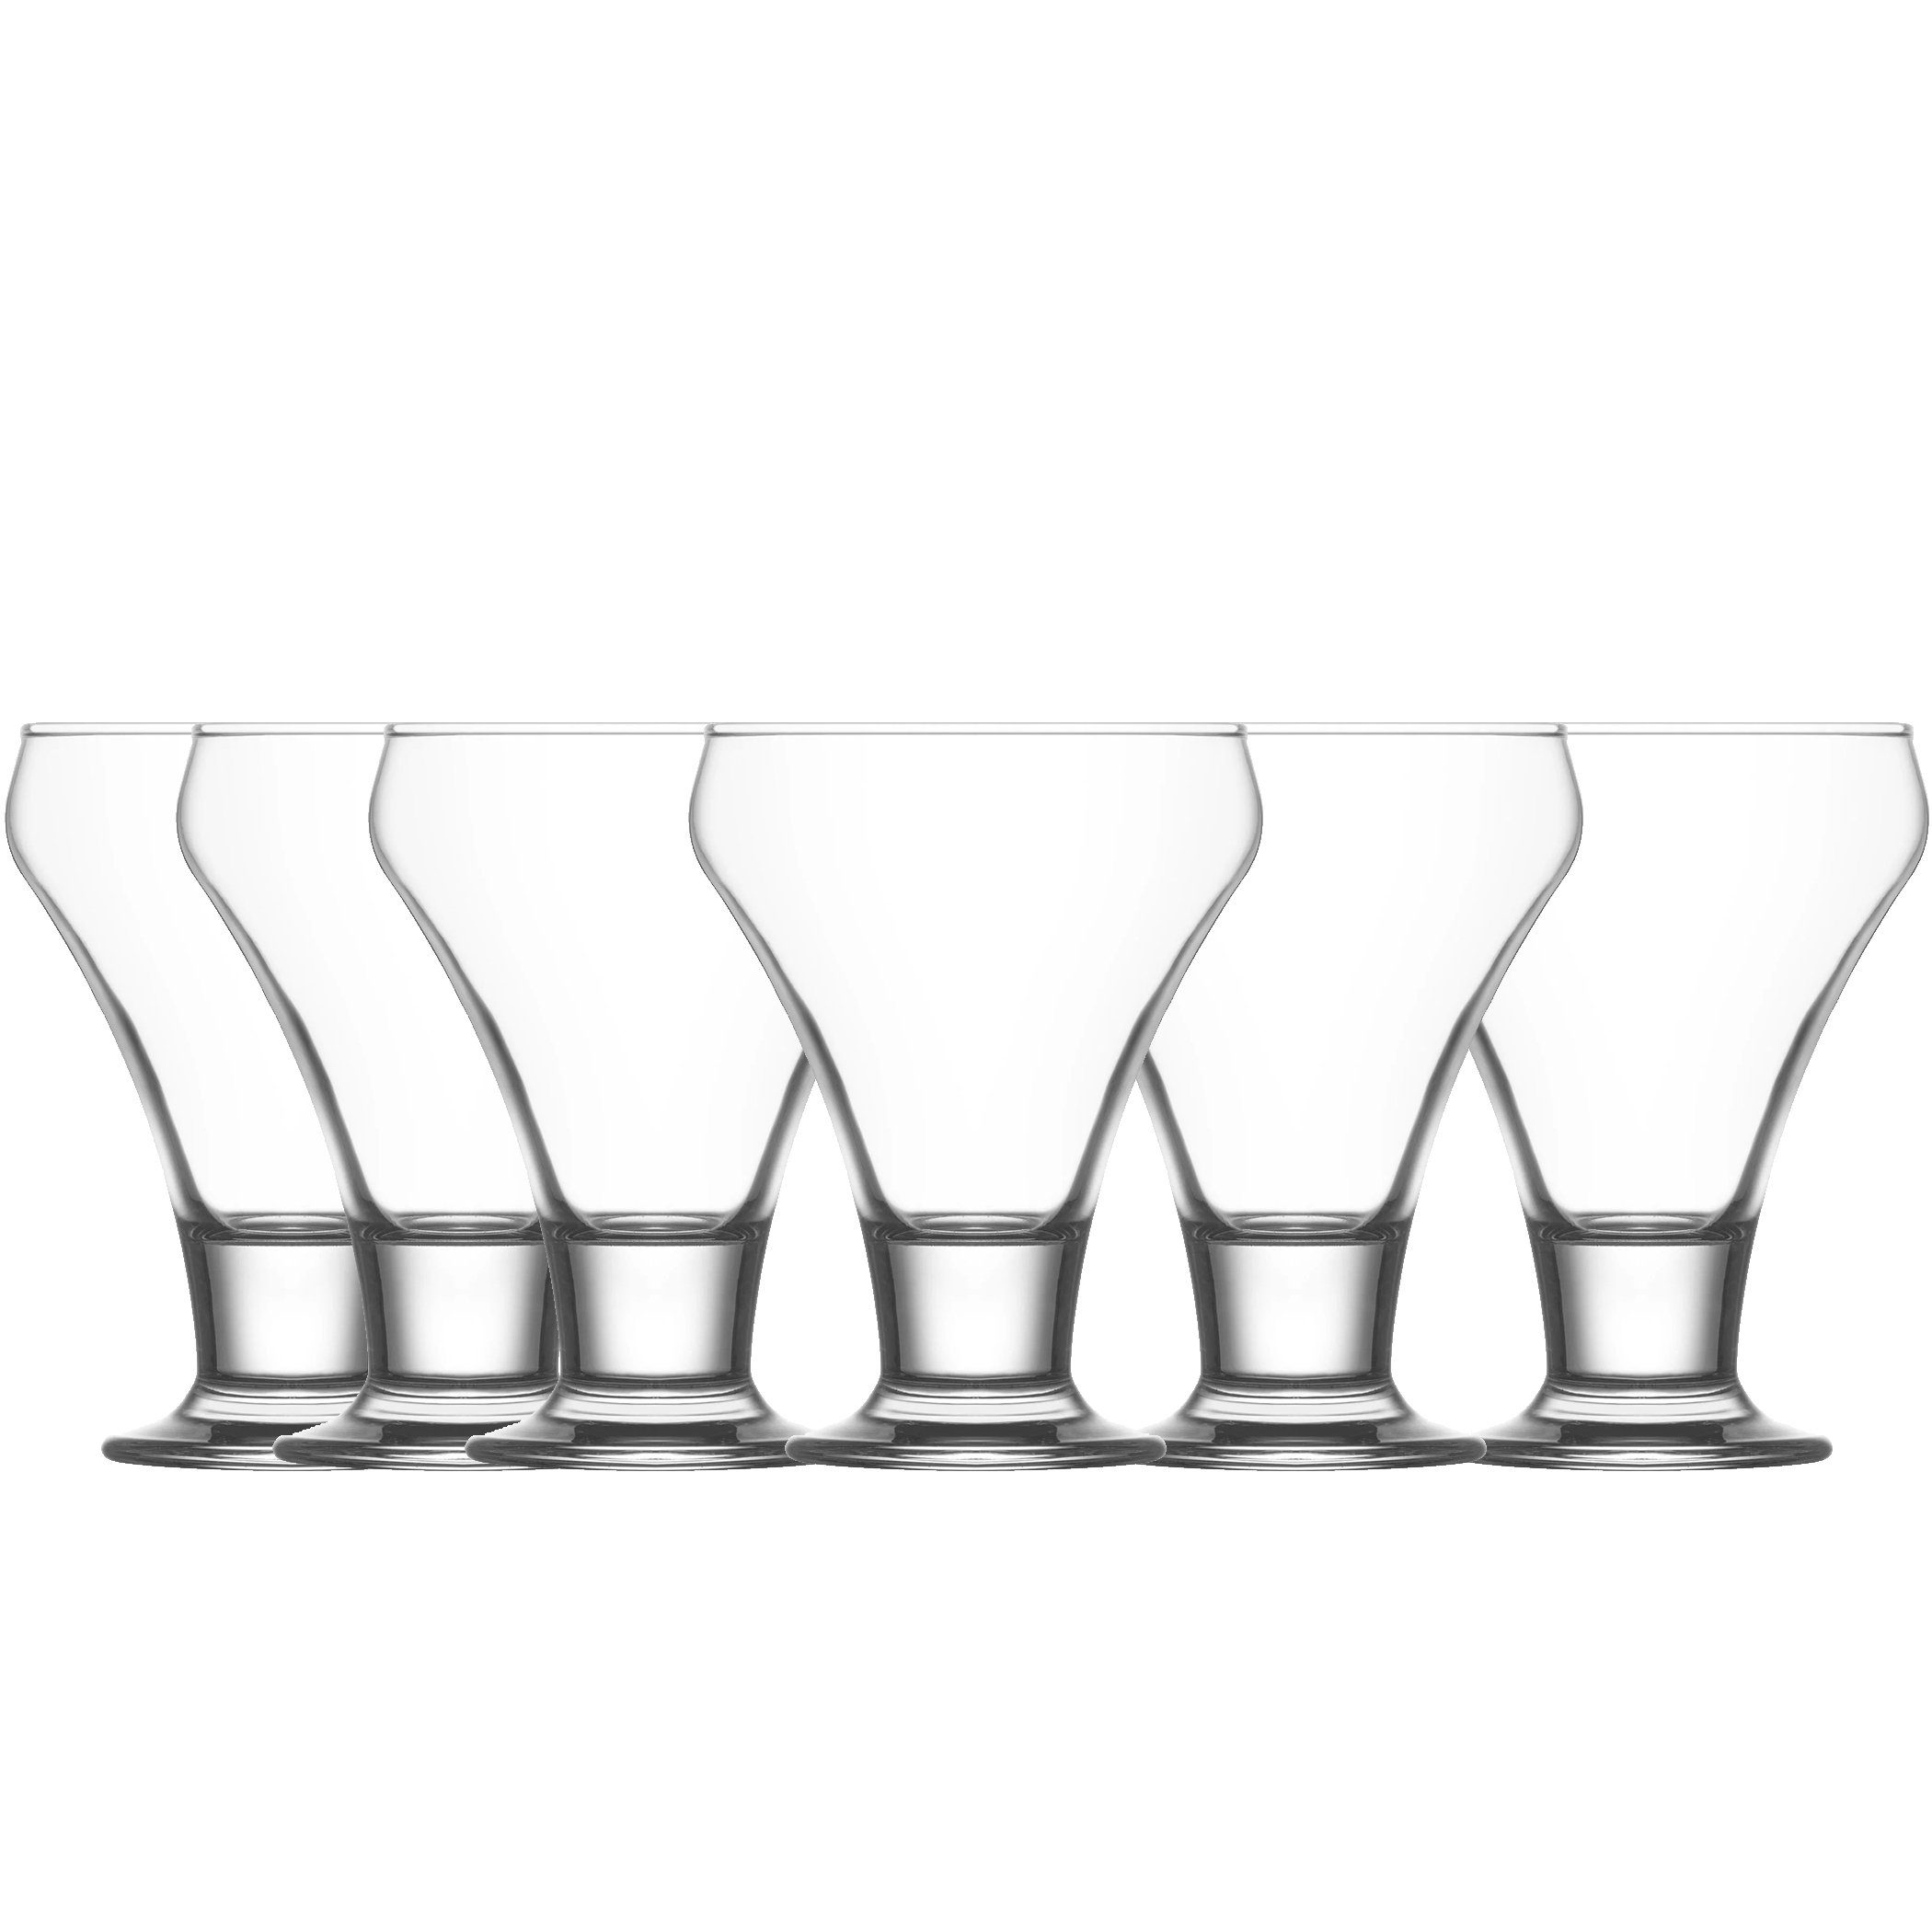 6tlg Glas, Dessert-Glas LAV Eisbecher 305ml Spülmaschinenfest Glas FRO378,